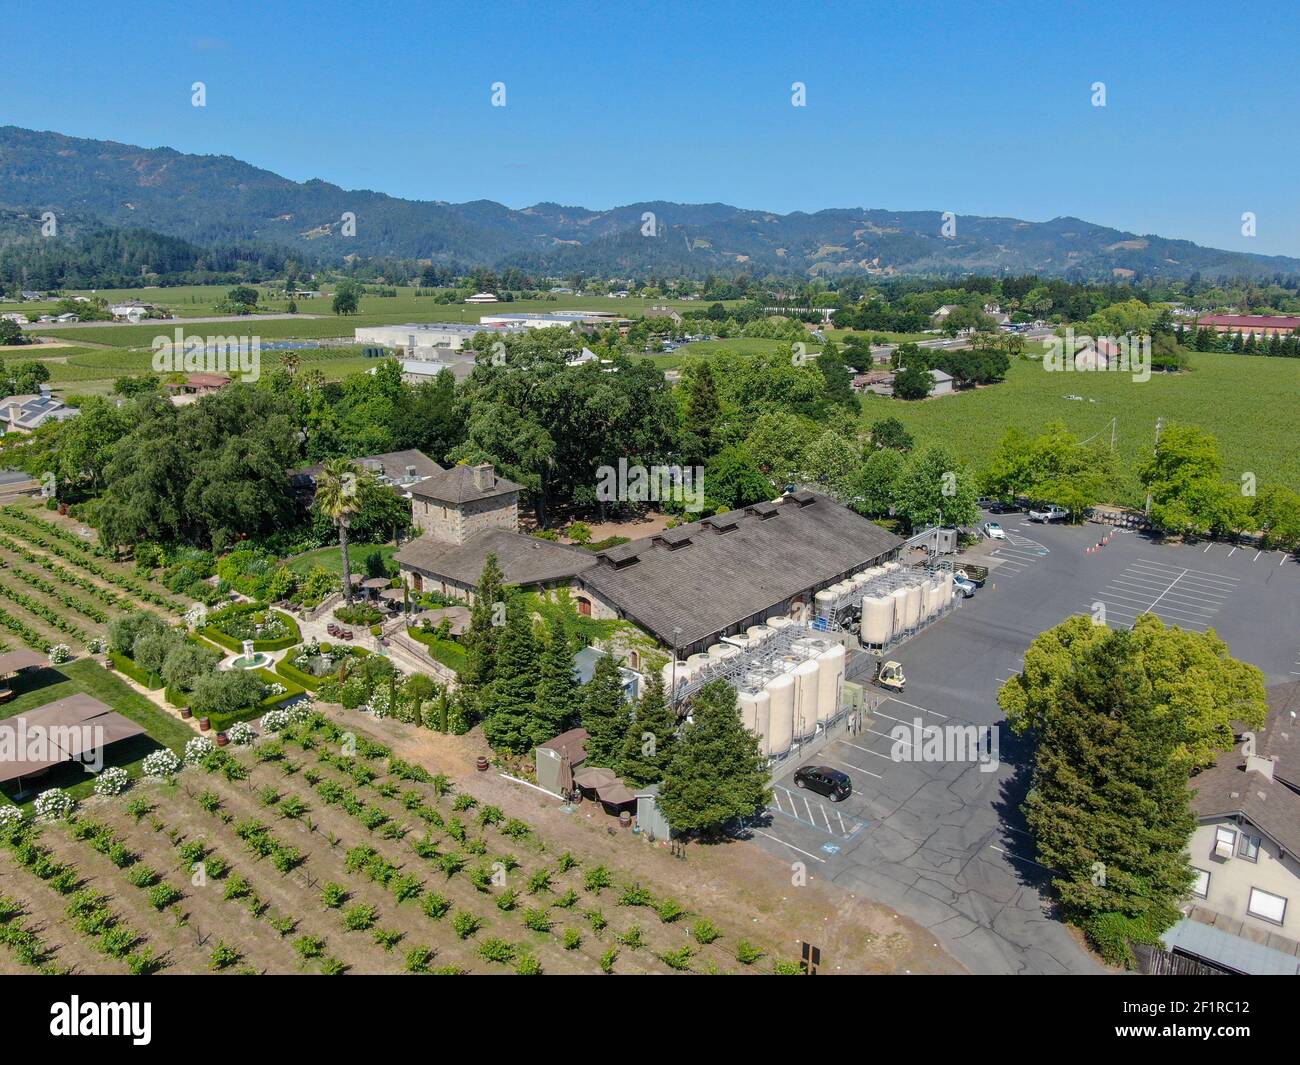 Vista aerea dell'azienda vinicola V. Sattui e del negozio al dettaglio, St. Helena, Napa Valley, California, USA. Foto Stock